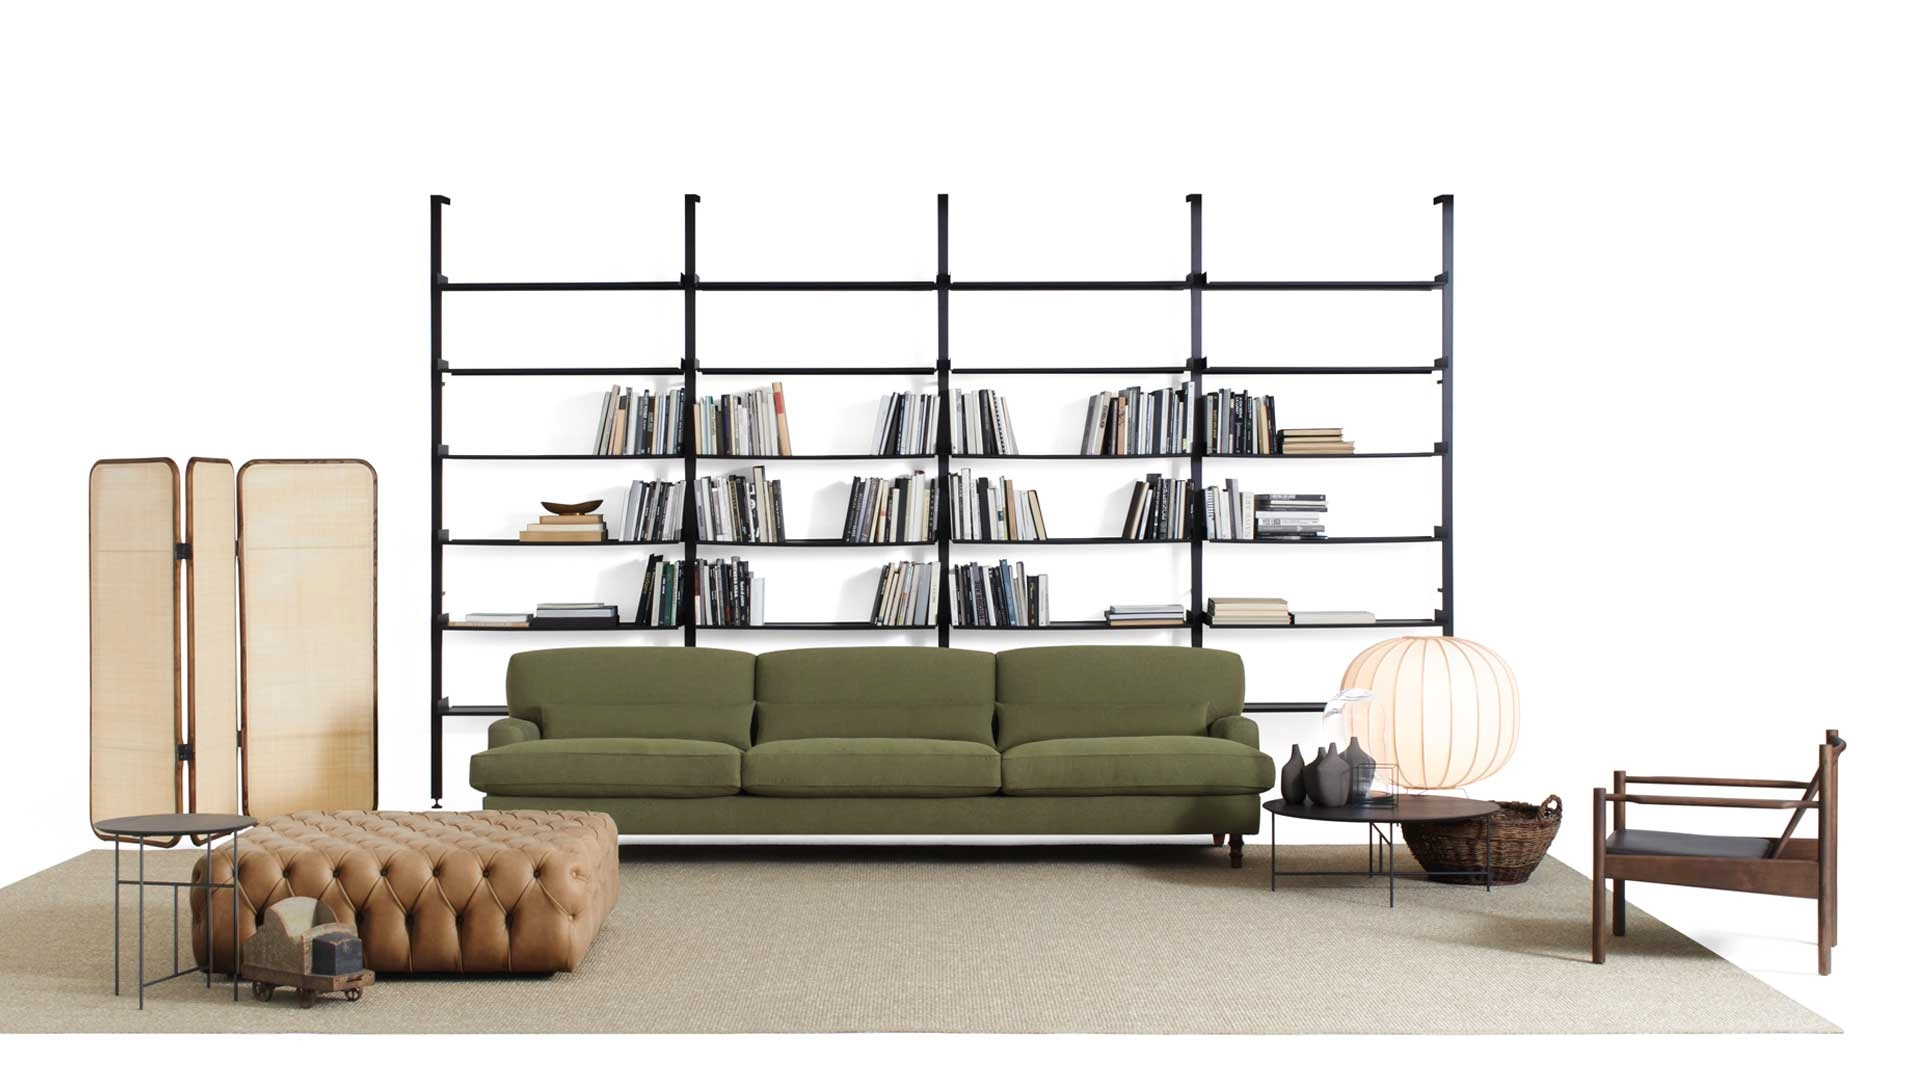 Raffles: Sofa designed by Vico Magistretti